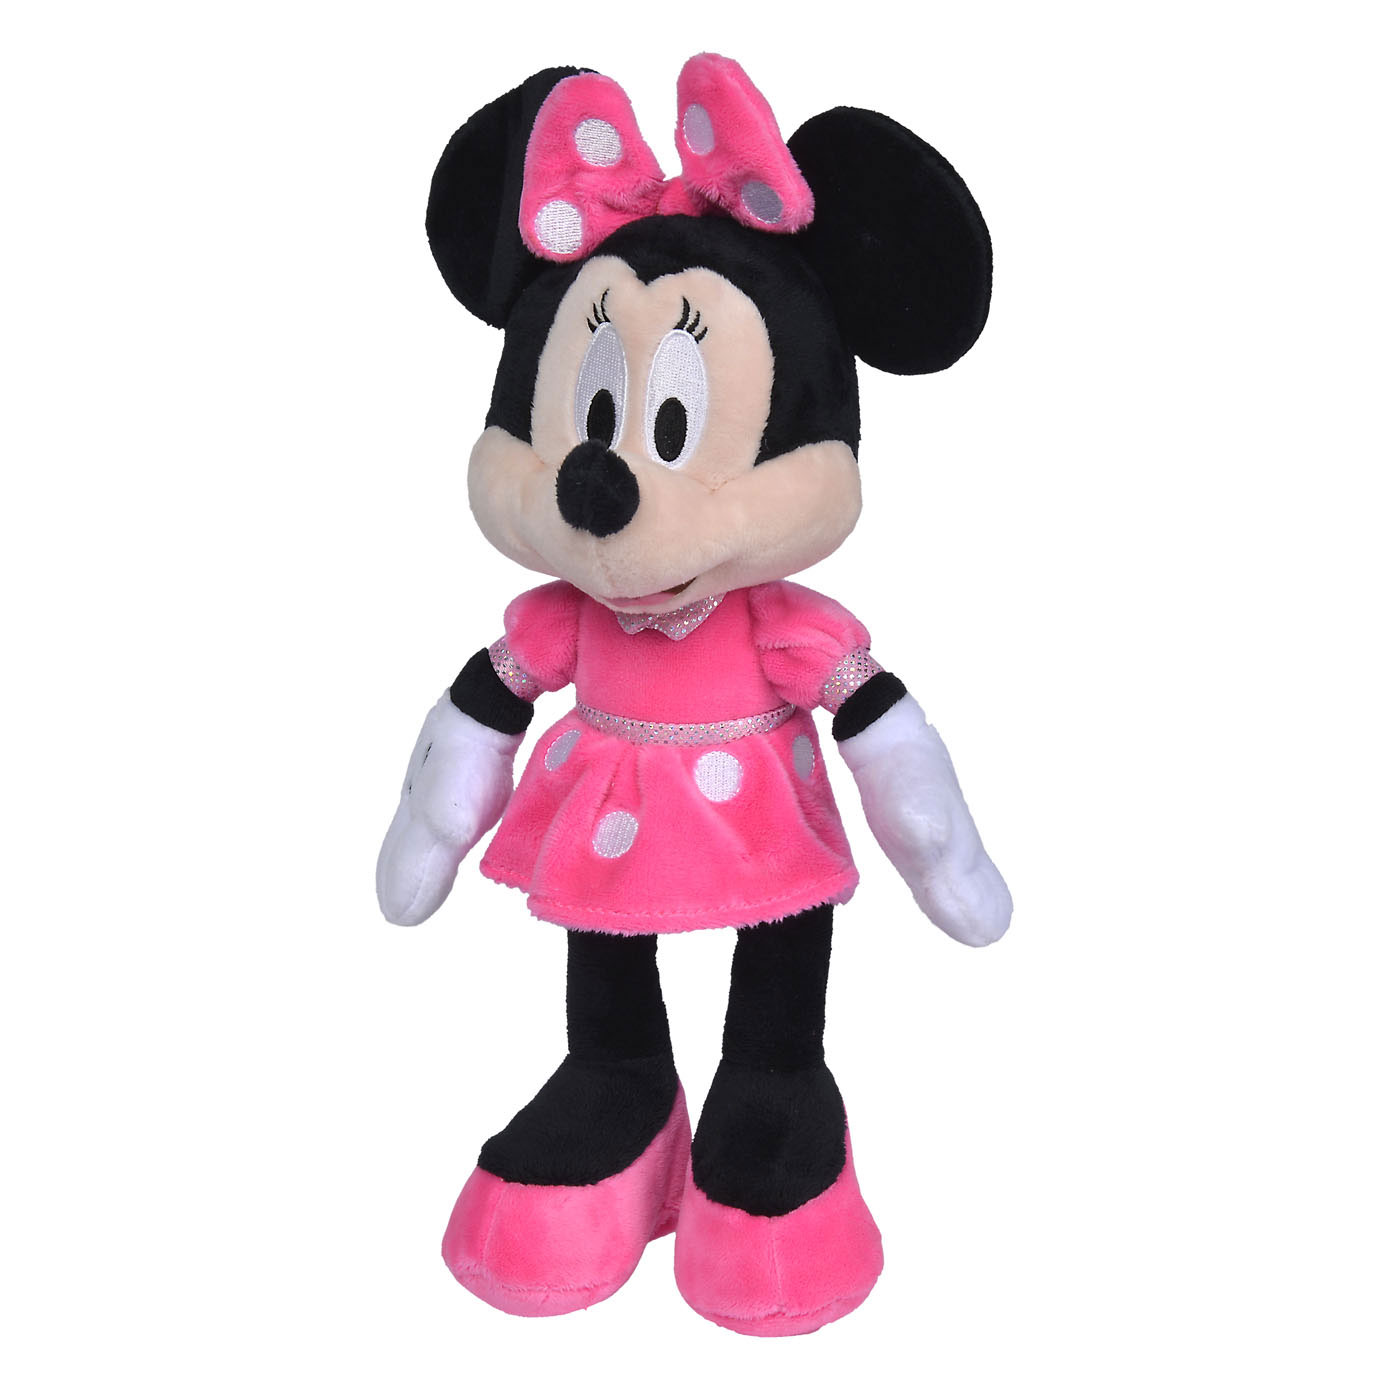 Disney Minnie Mouse Plüschtier , 25 cm